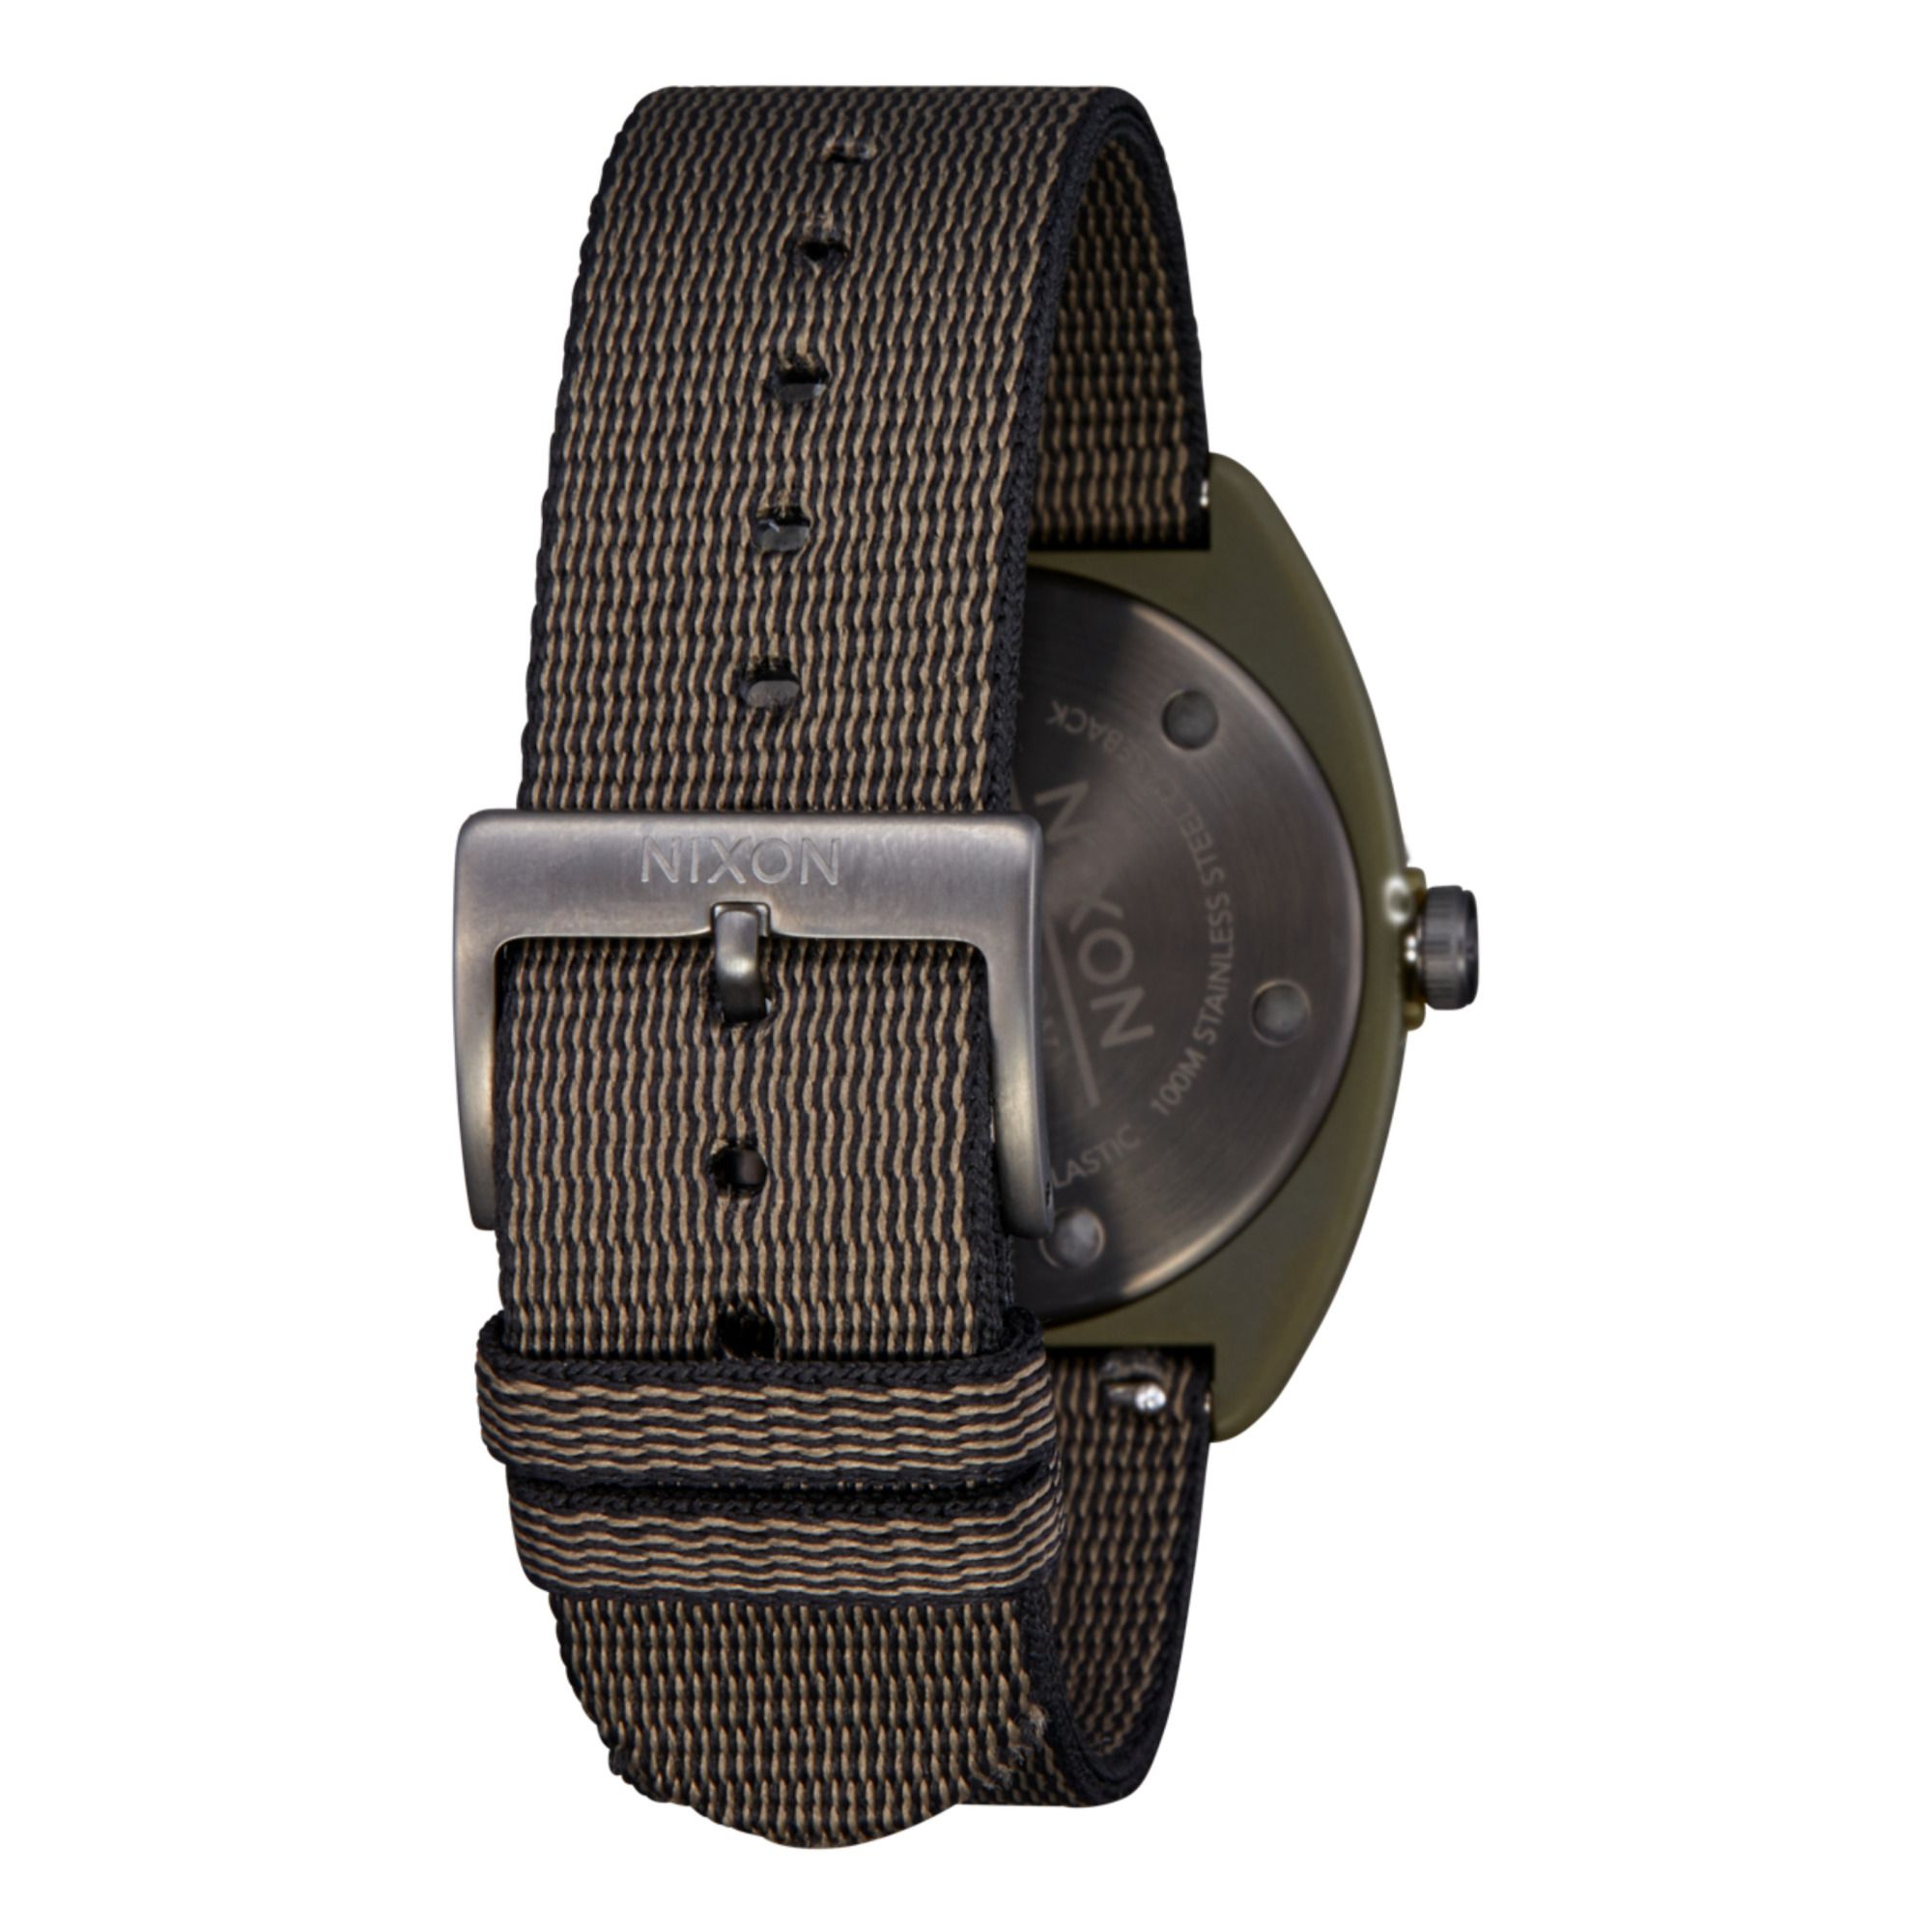 Heat Watch Verde militare- Immagine del prodotto n°3